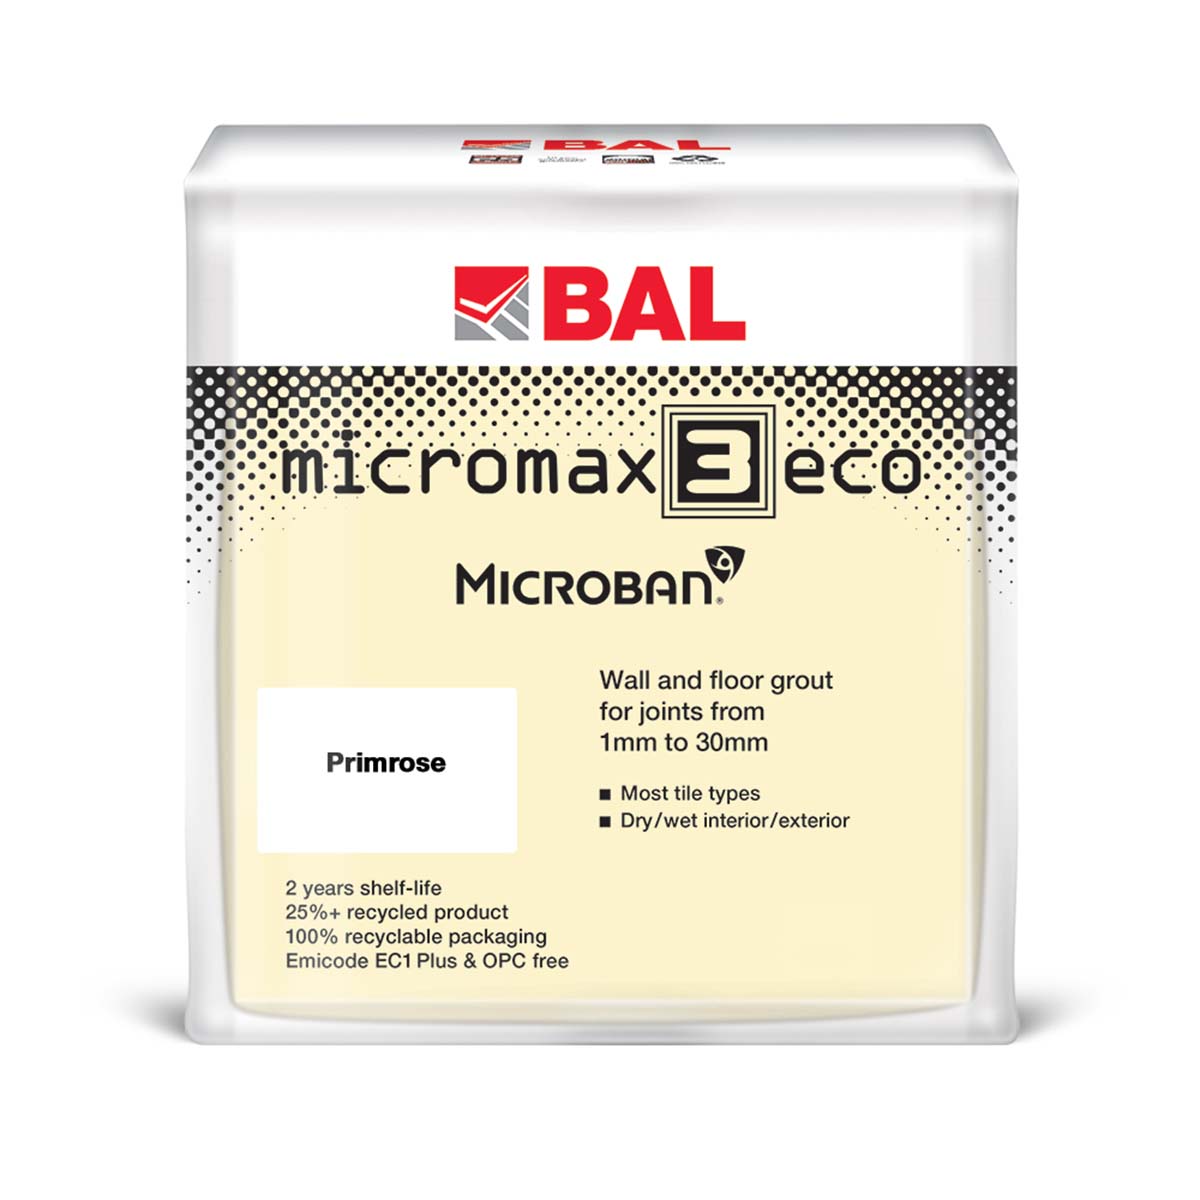 BAL micromax 3 eco wall and floor tile adhesive primrose